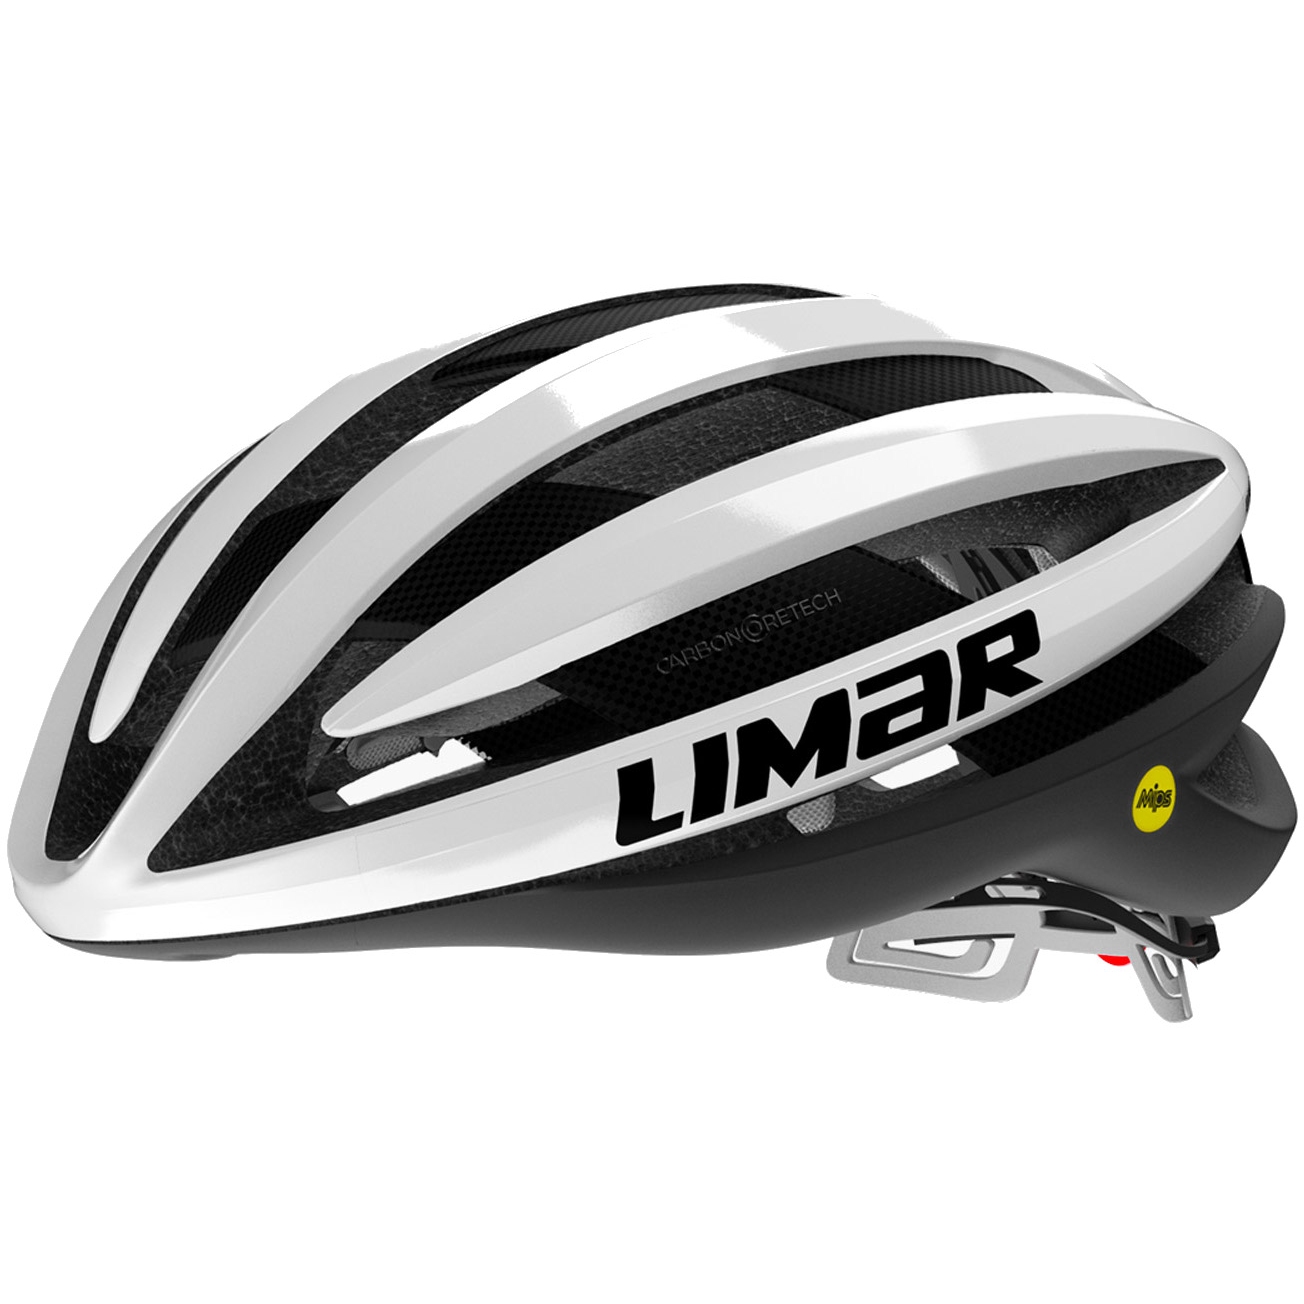 Productfoto van Limar Air Pro + MIPS Helmet - Iridescent White